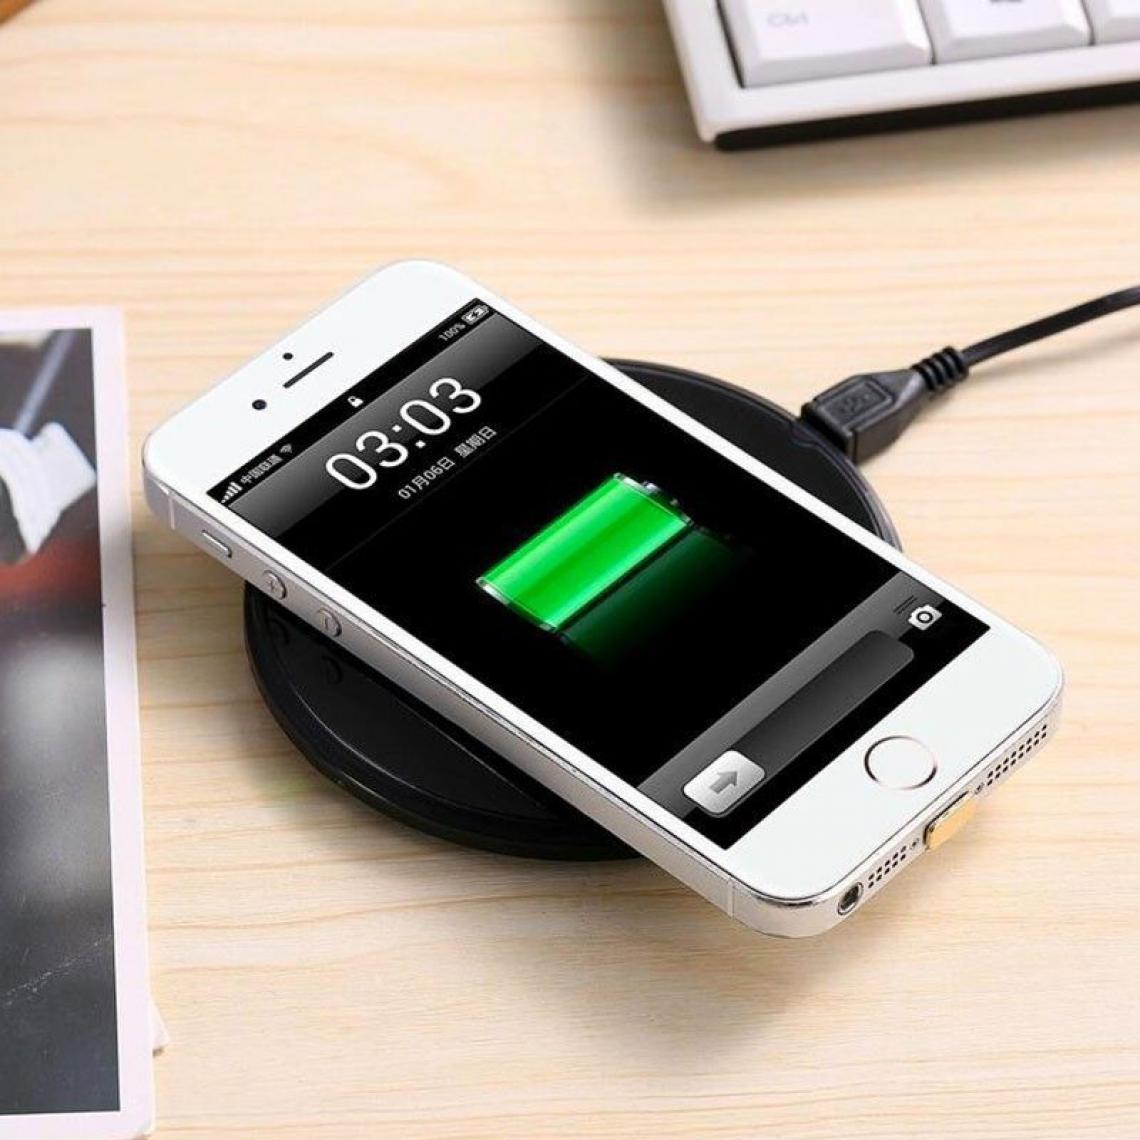 Inconnu - Chargeur sans fil à induction + Récepteur - Noir - iPhone 5, iPhone 6, iPhone 7 - Autres accessoires smartphone